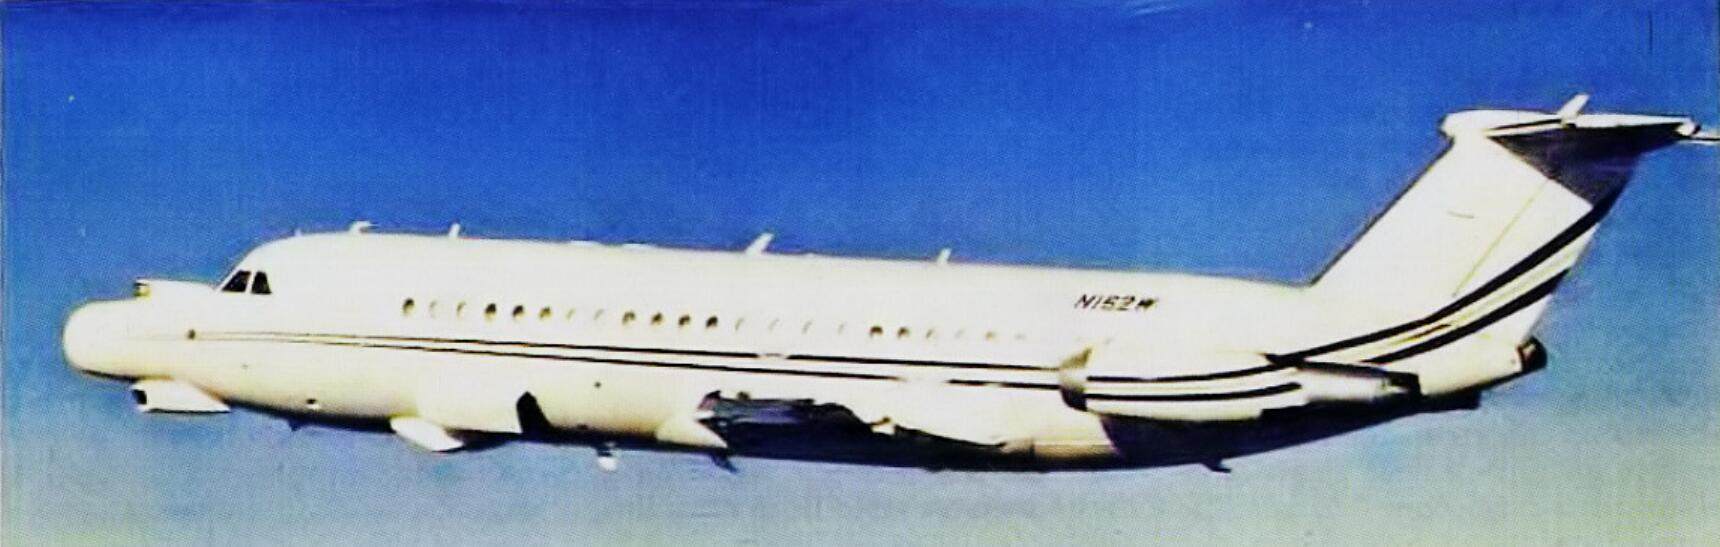 编号N162W的这架BAC-111是诺斯罗普最主要的空中试验平台，前后担任过多个型号航电系统的空中测试任务。